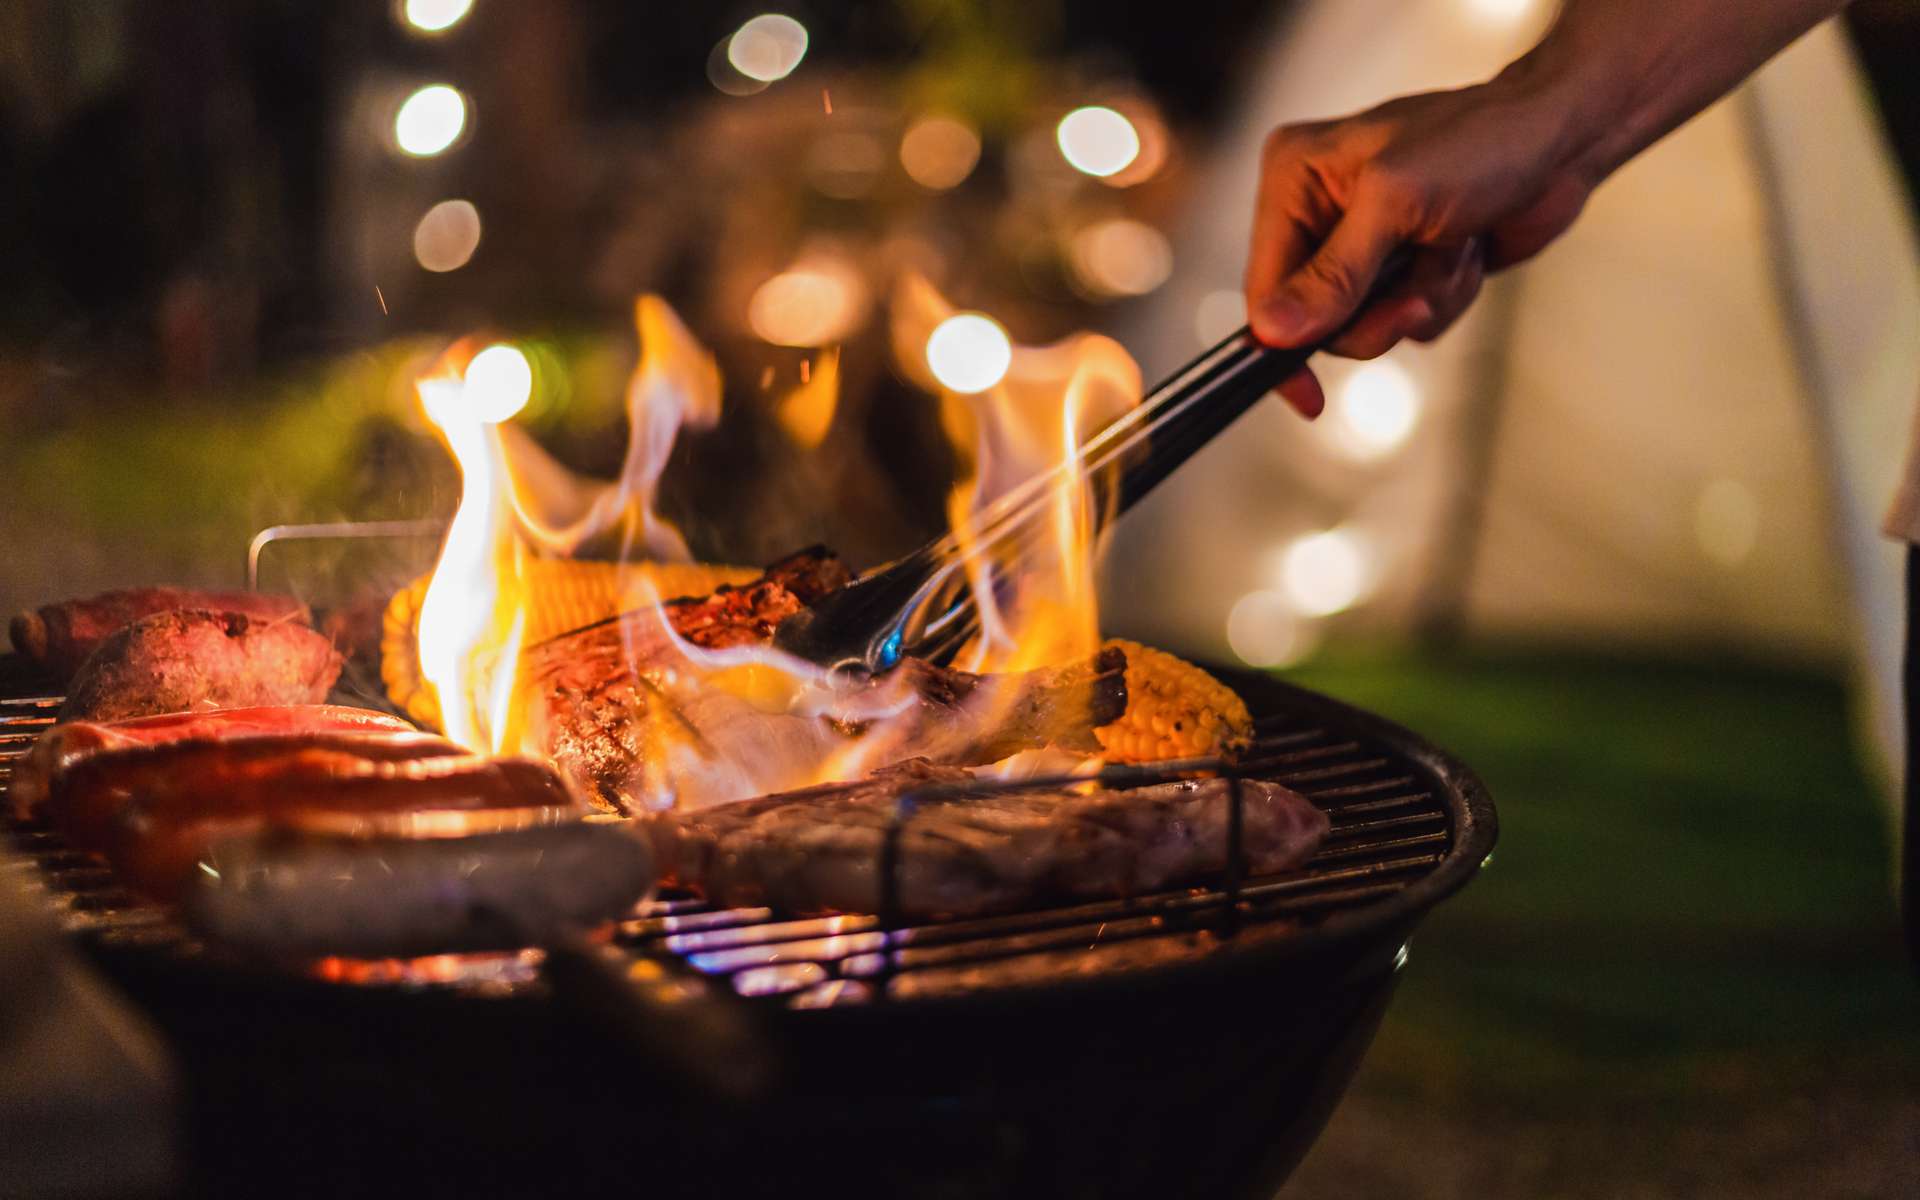 À ce jour, aucune loi ne réglemente l'utilisation d'un barbecue. © Peera, Adobe Stock